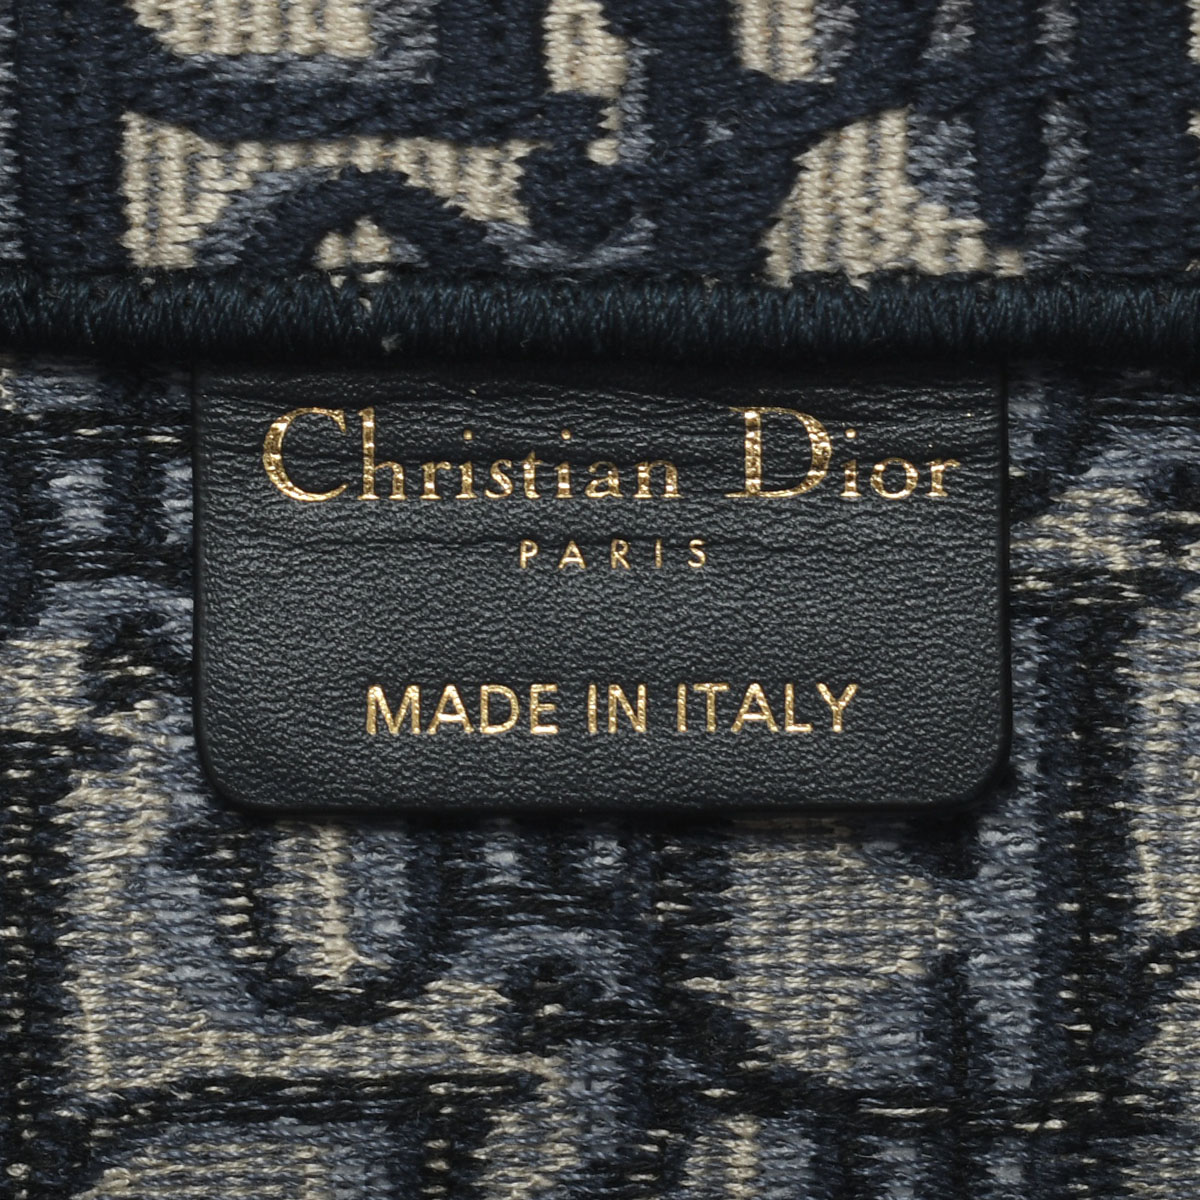 (美品)クリスチャン ディオール Christian Dior ブックトート ミディアム M1296ZRIW-M928 ネイビー 8142